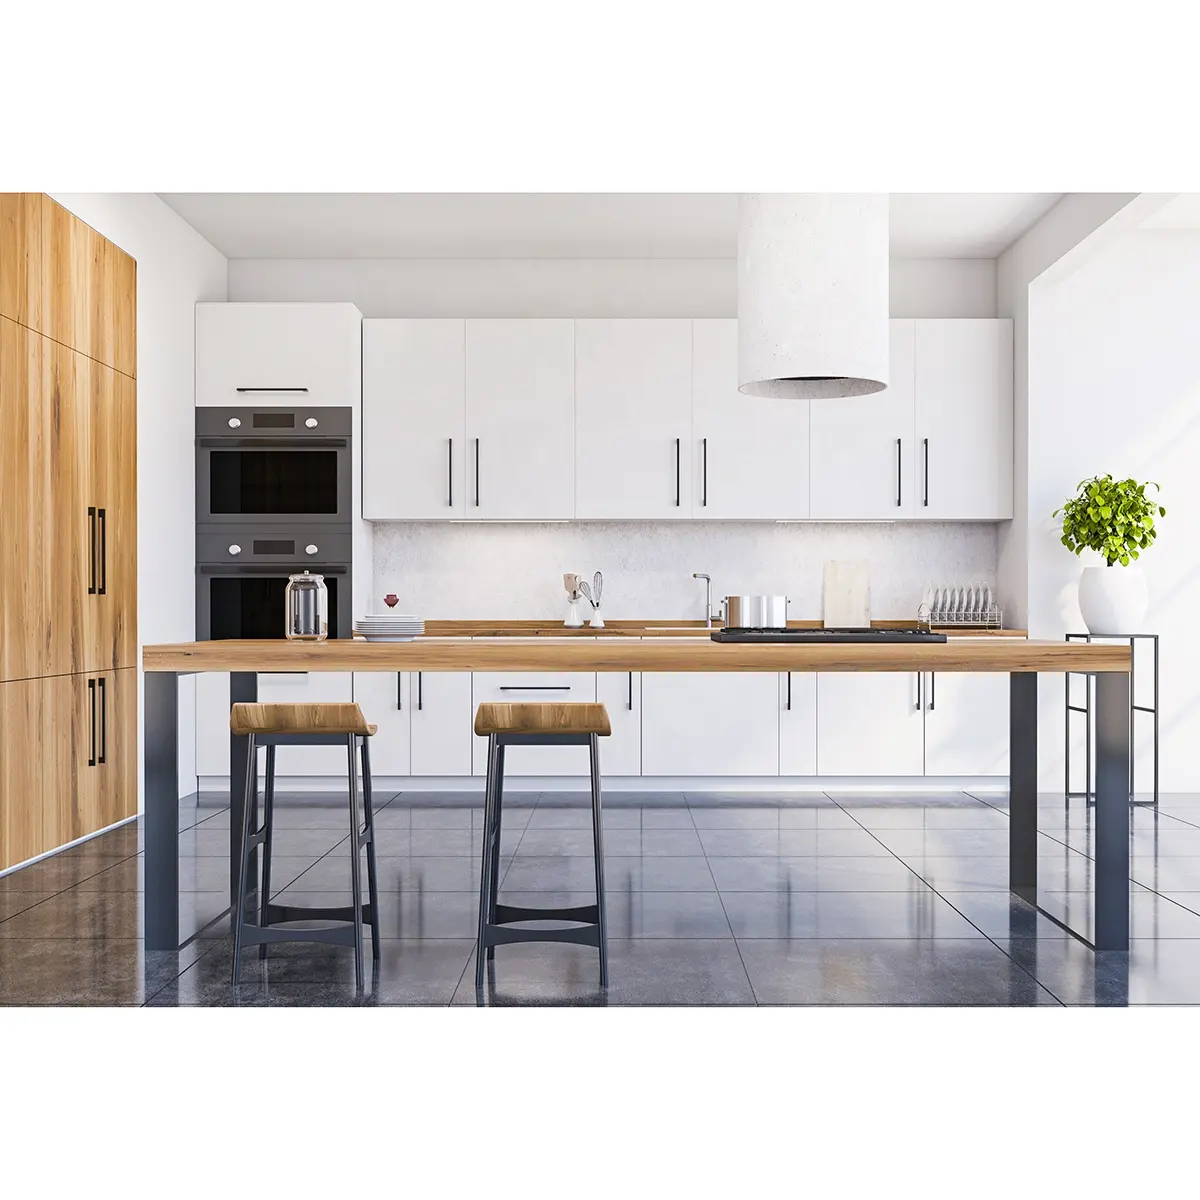 Moderno lacado blanco mate simple limpio cocina diseños de almacenamiento gabinetes conjunto